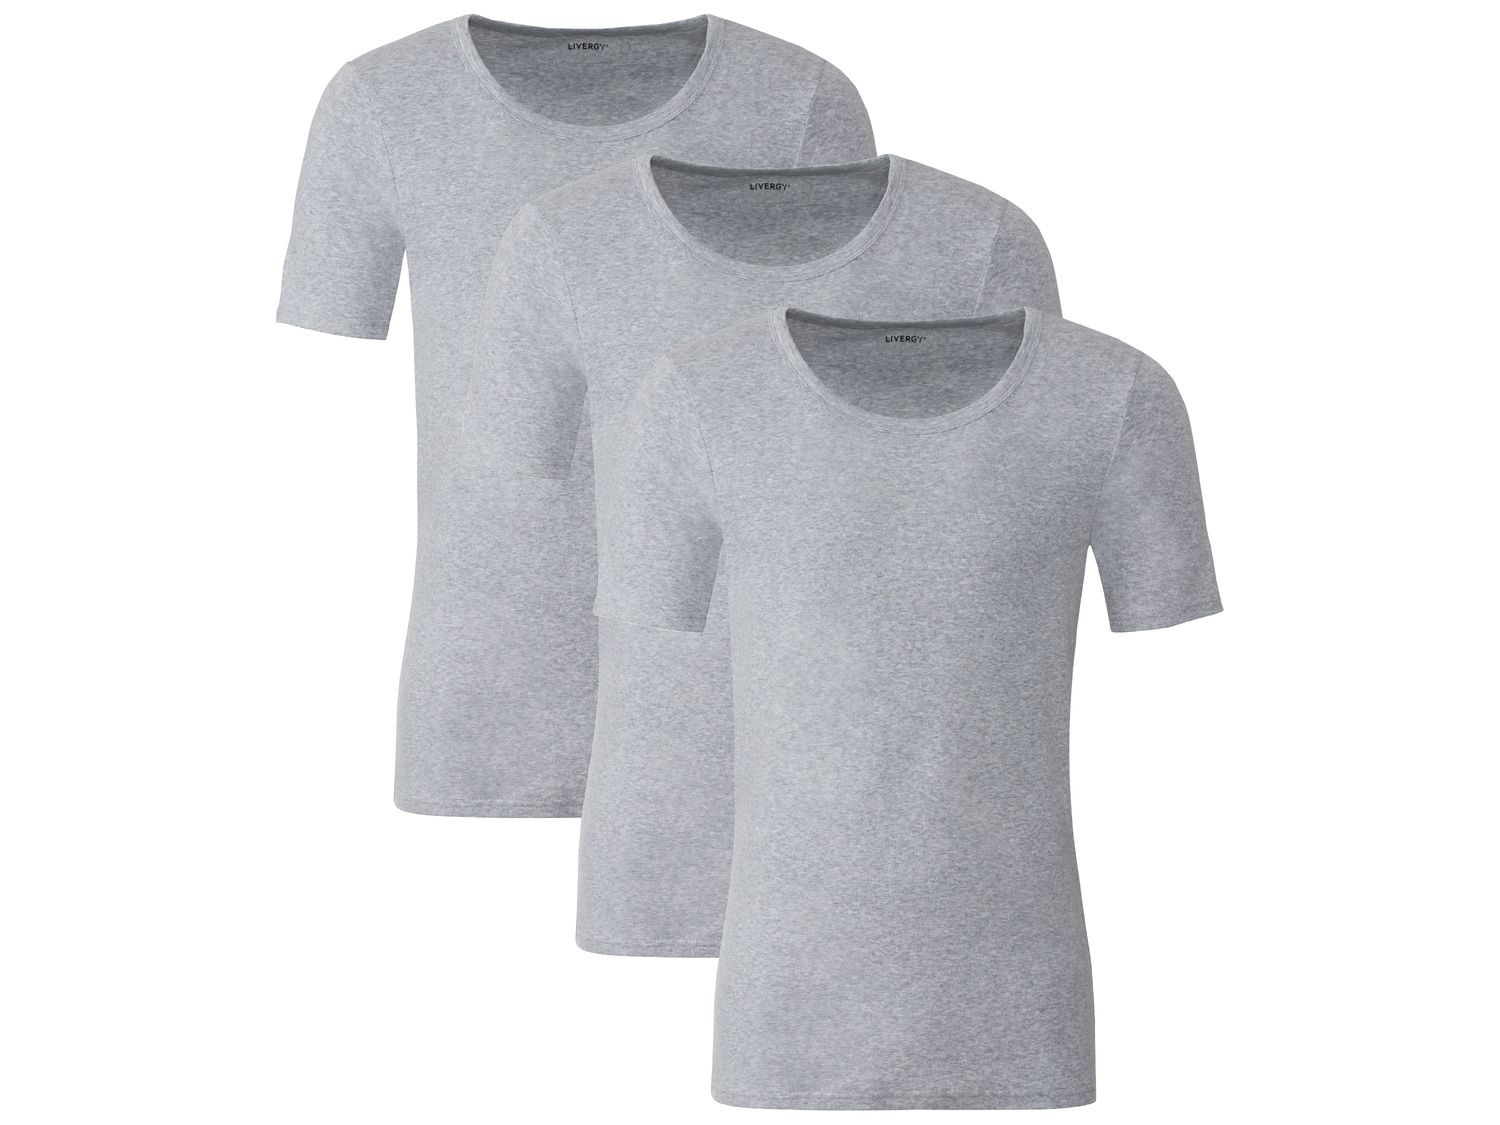 T-shirt intima da uomo, 3 pezzi Livergy, prezzo 9.99 &#8364; 
Misure: M-XL 
- ...